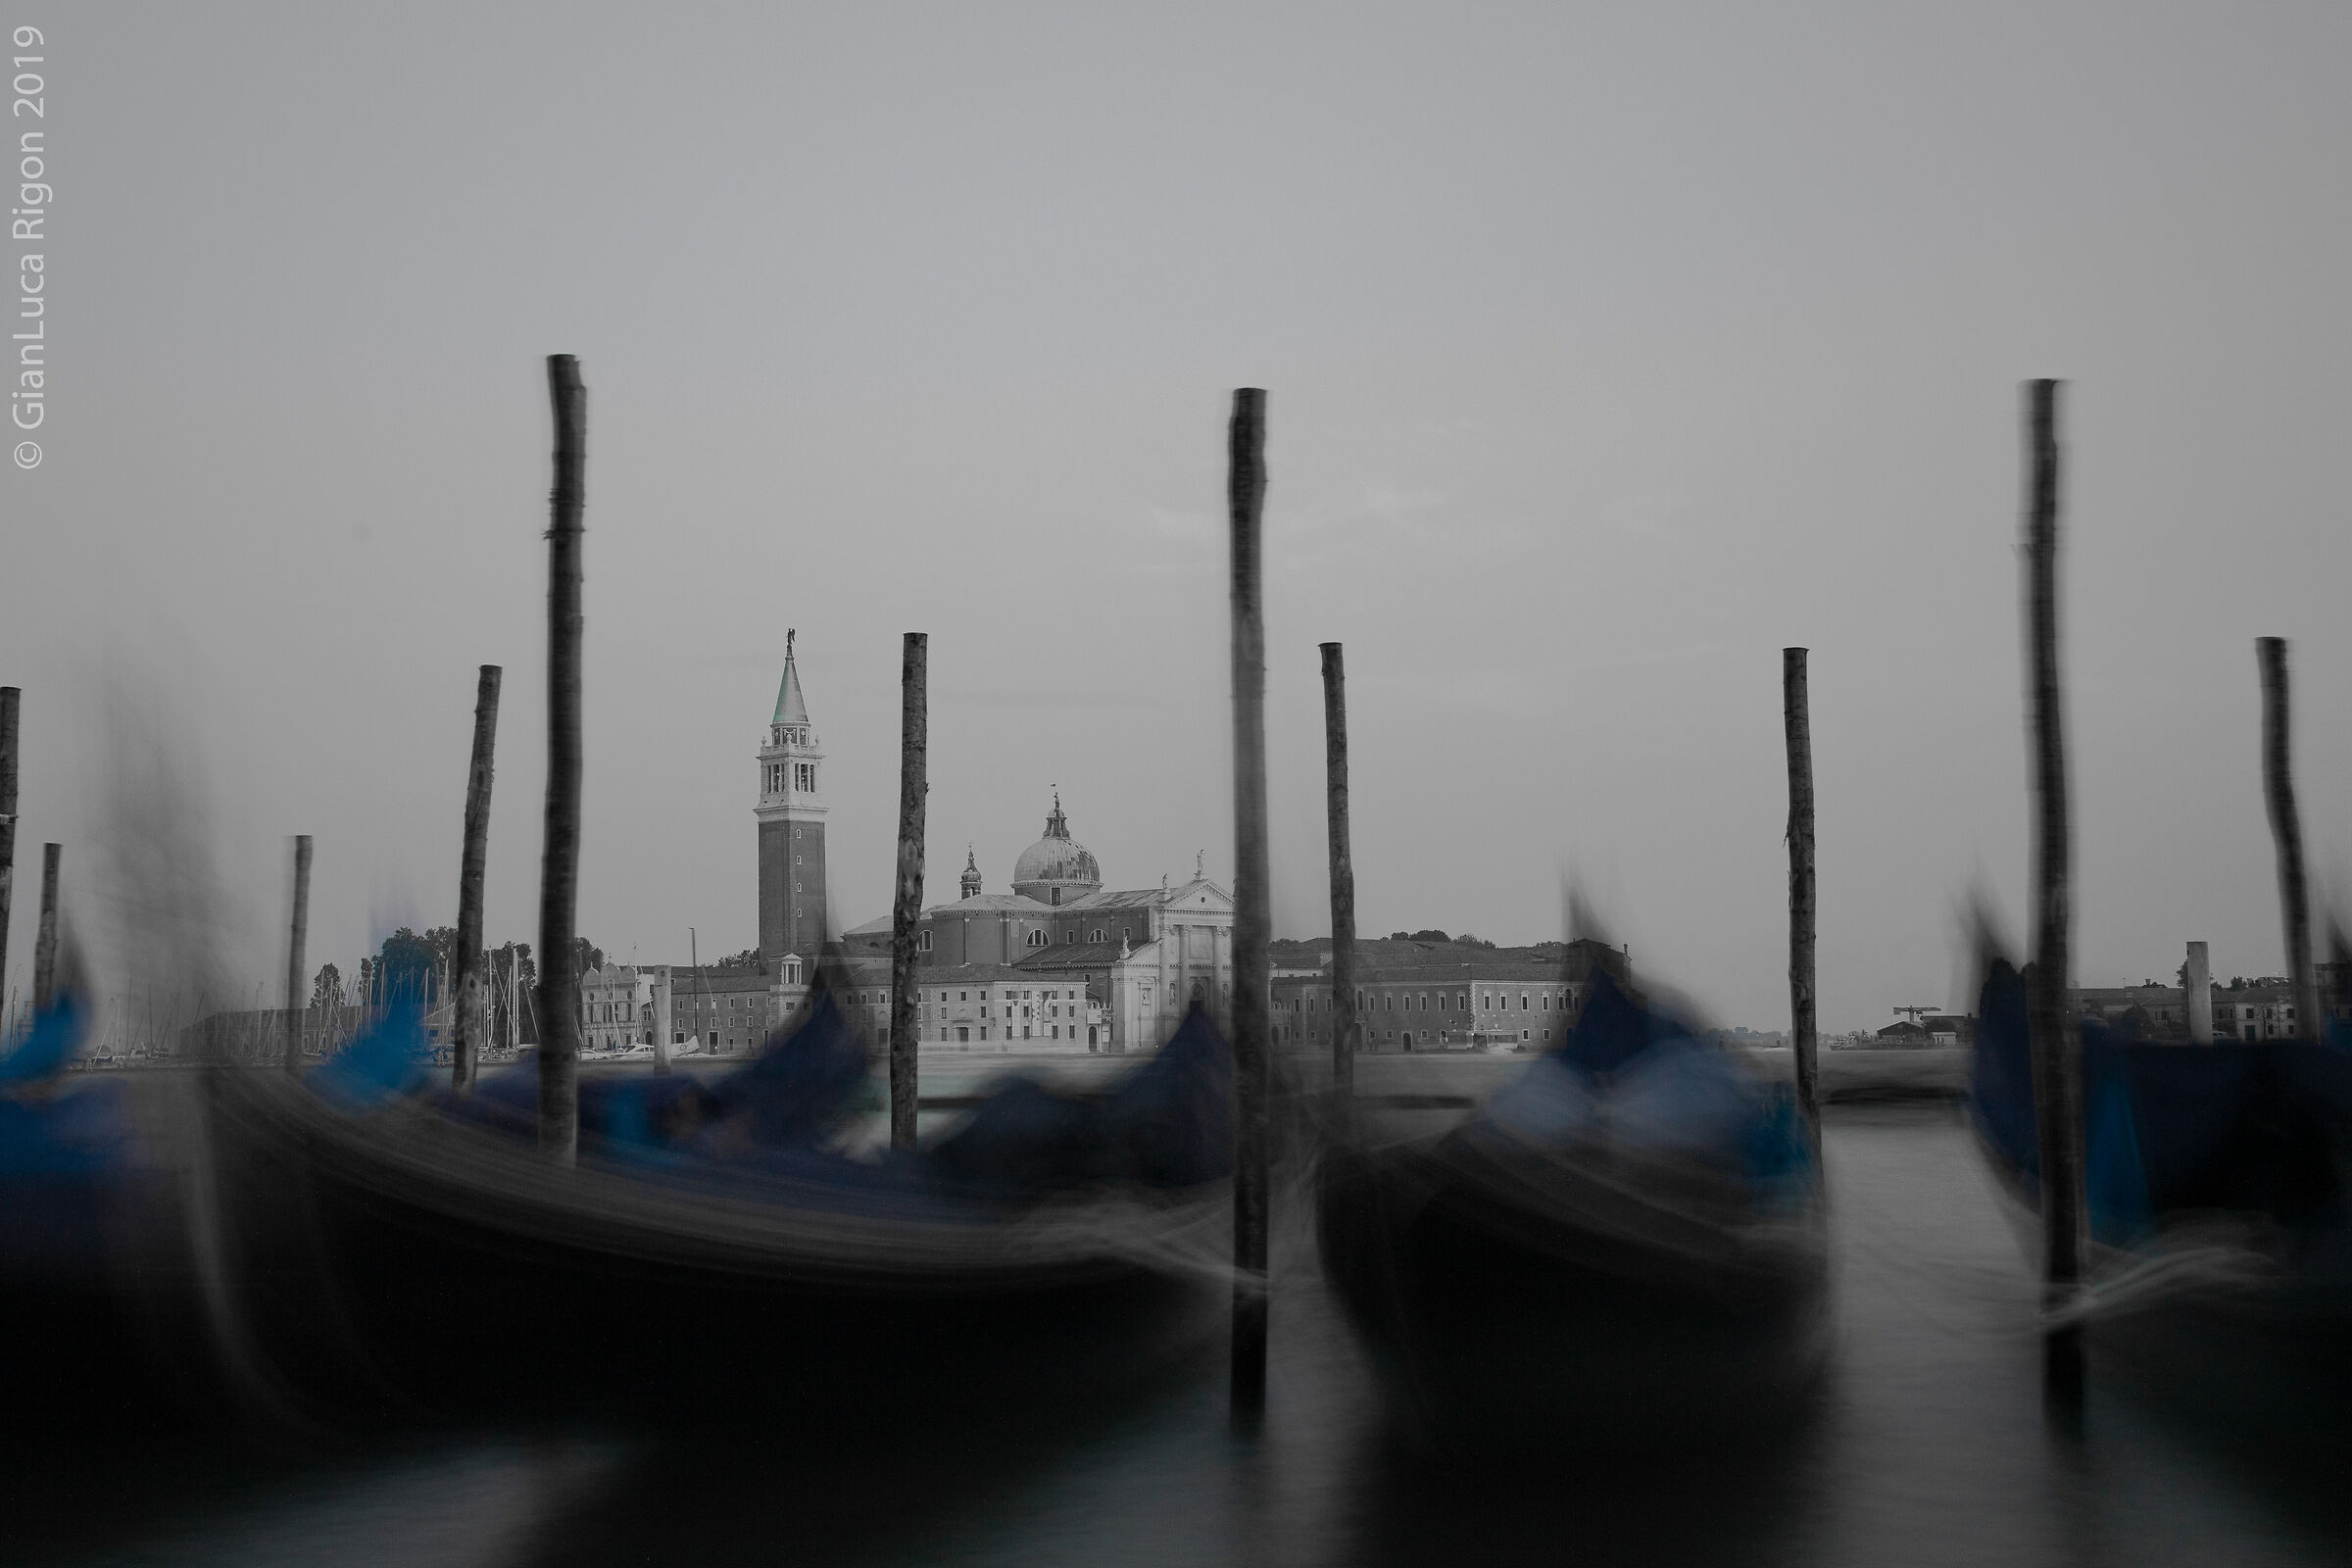 Gondolas in Venice (80s style)...